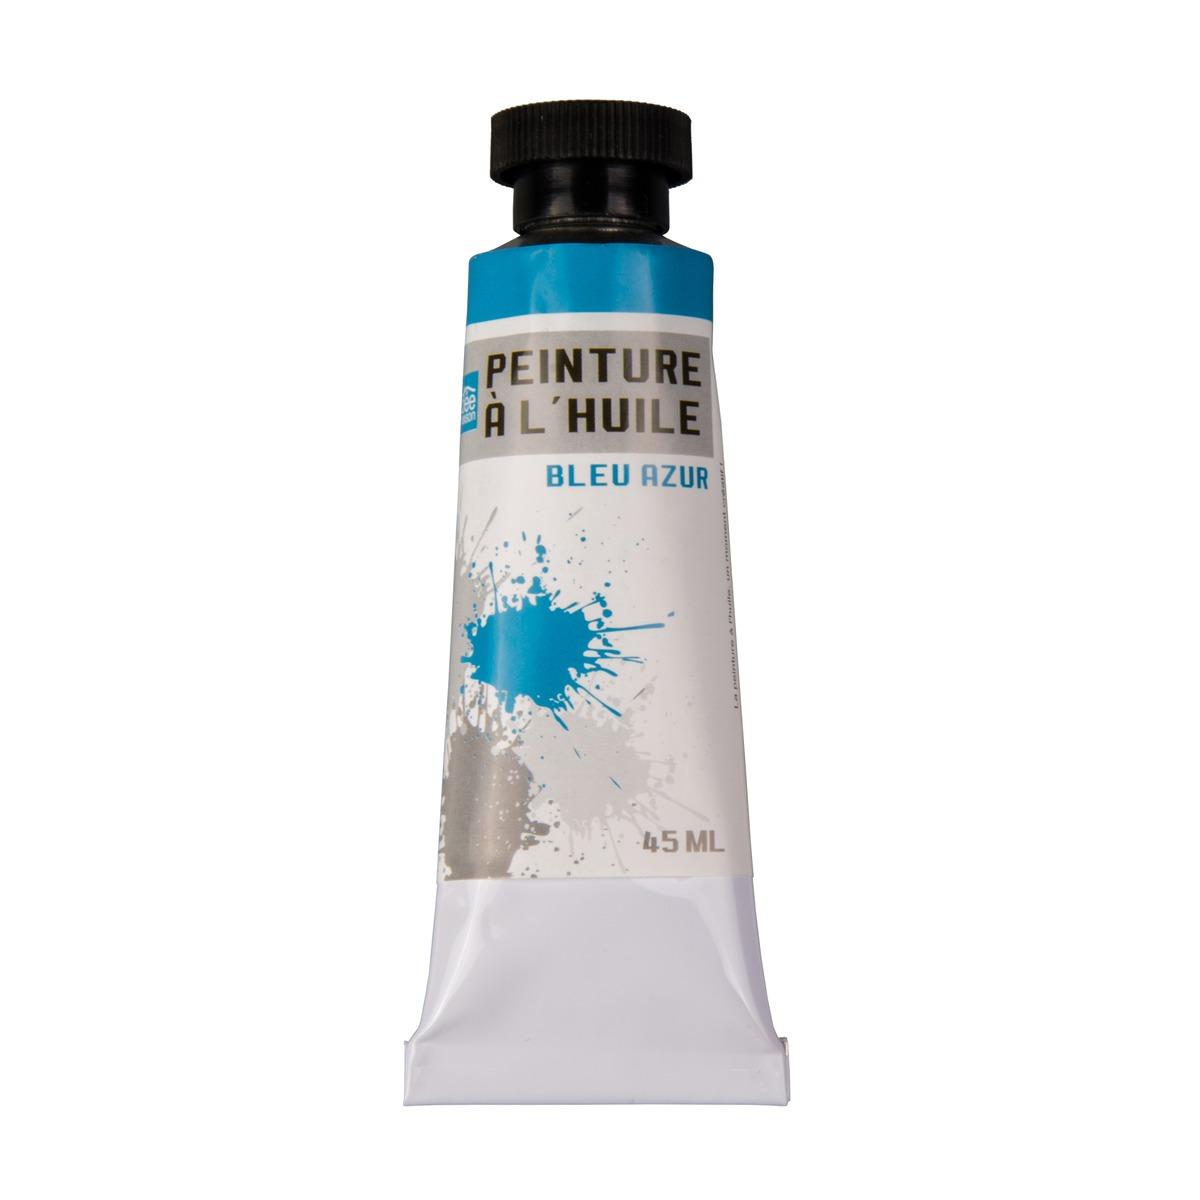 Tube de peinture à l'huile - 45 ml - Bleu azur